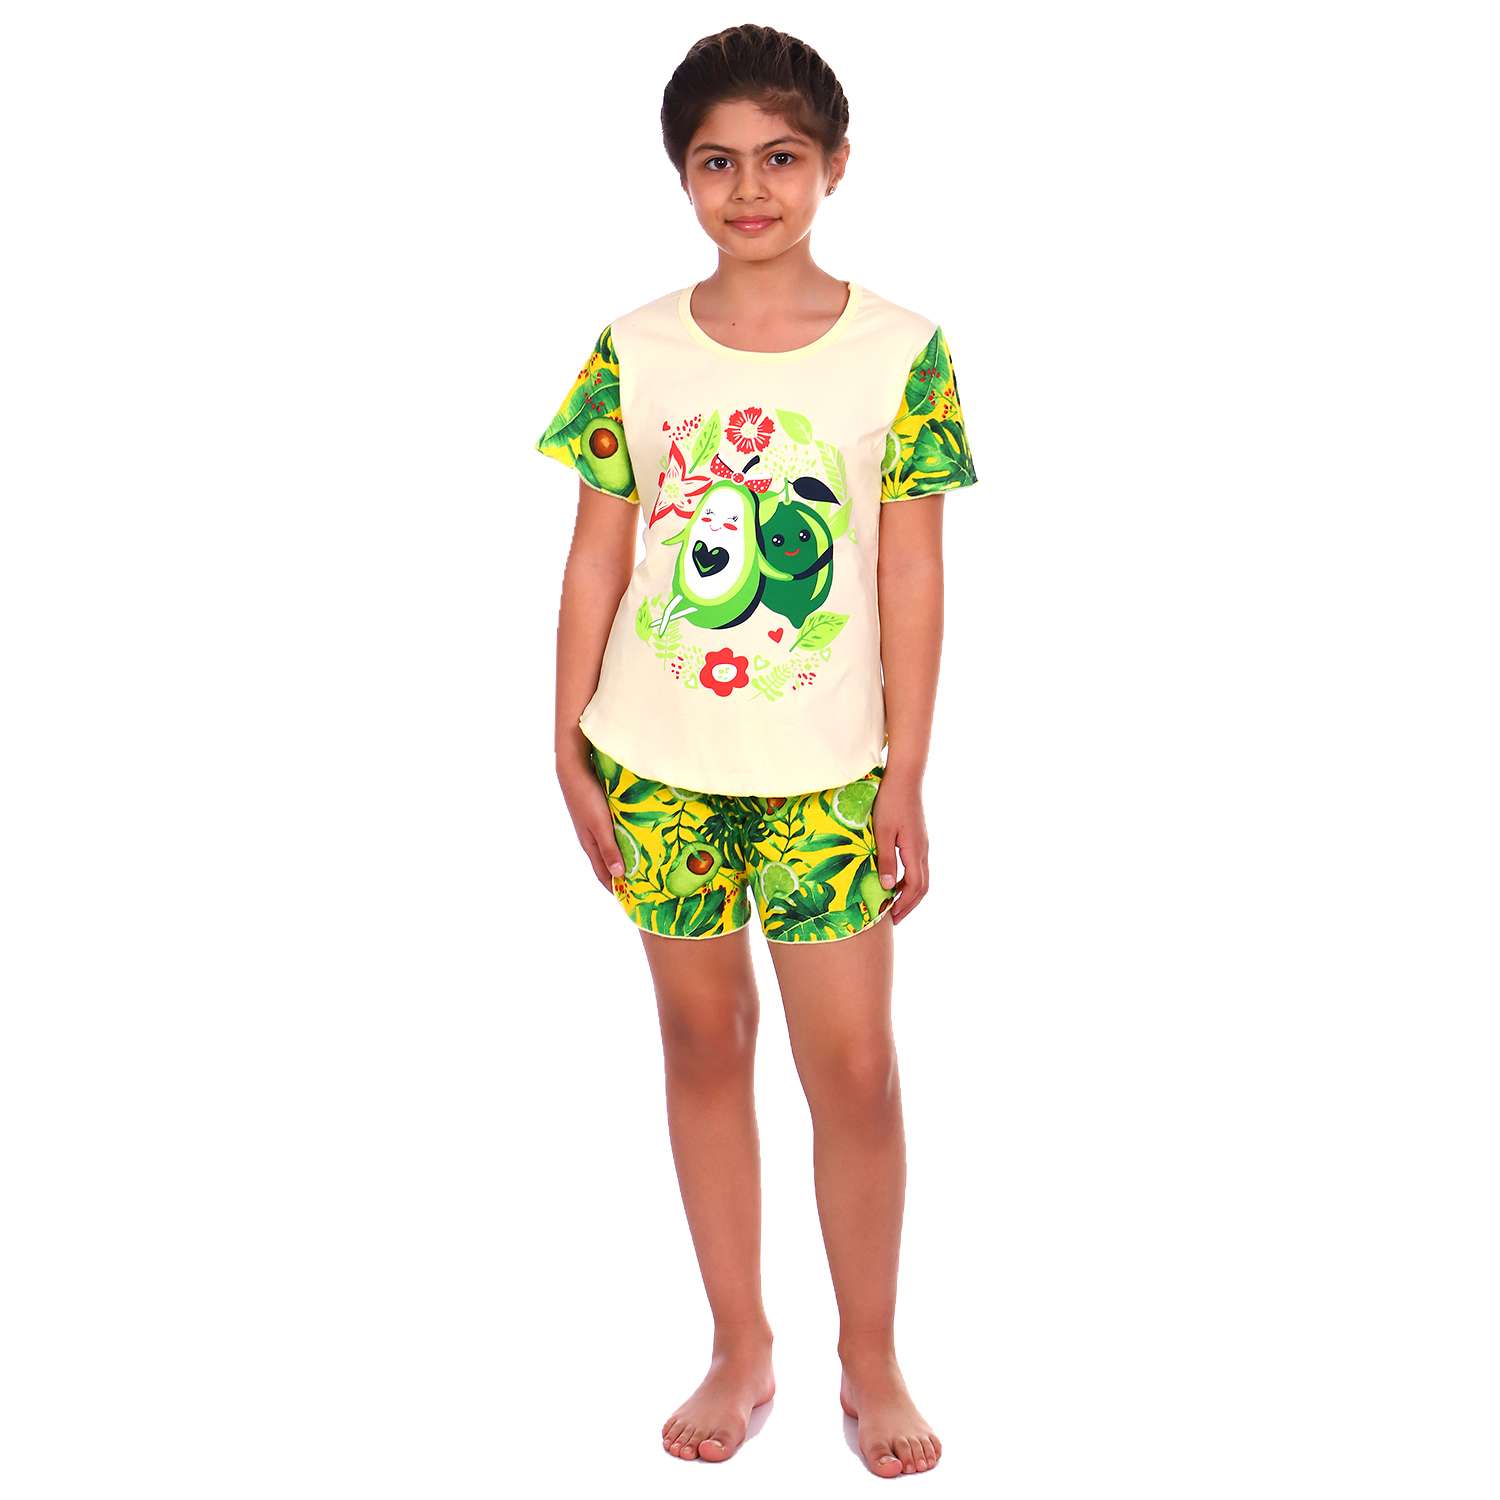 Пижама Детская Одежда 004К8Кр/желто-зеленый - фото 1